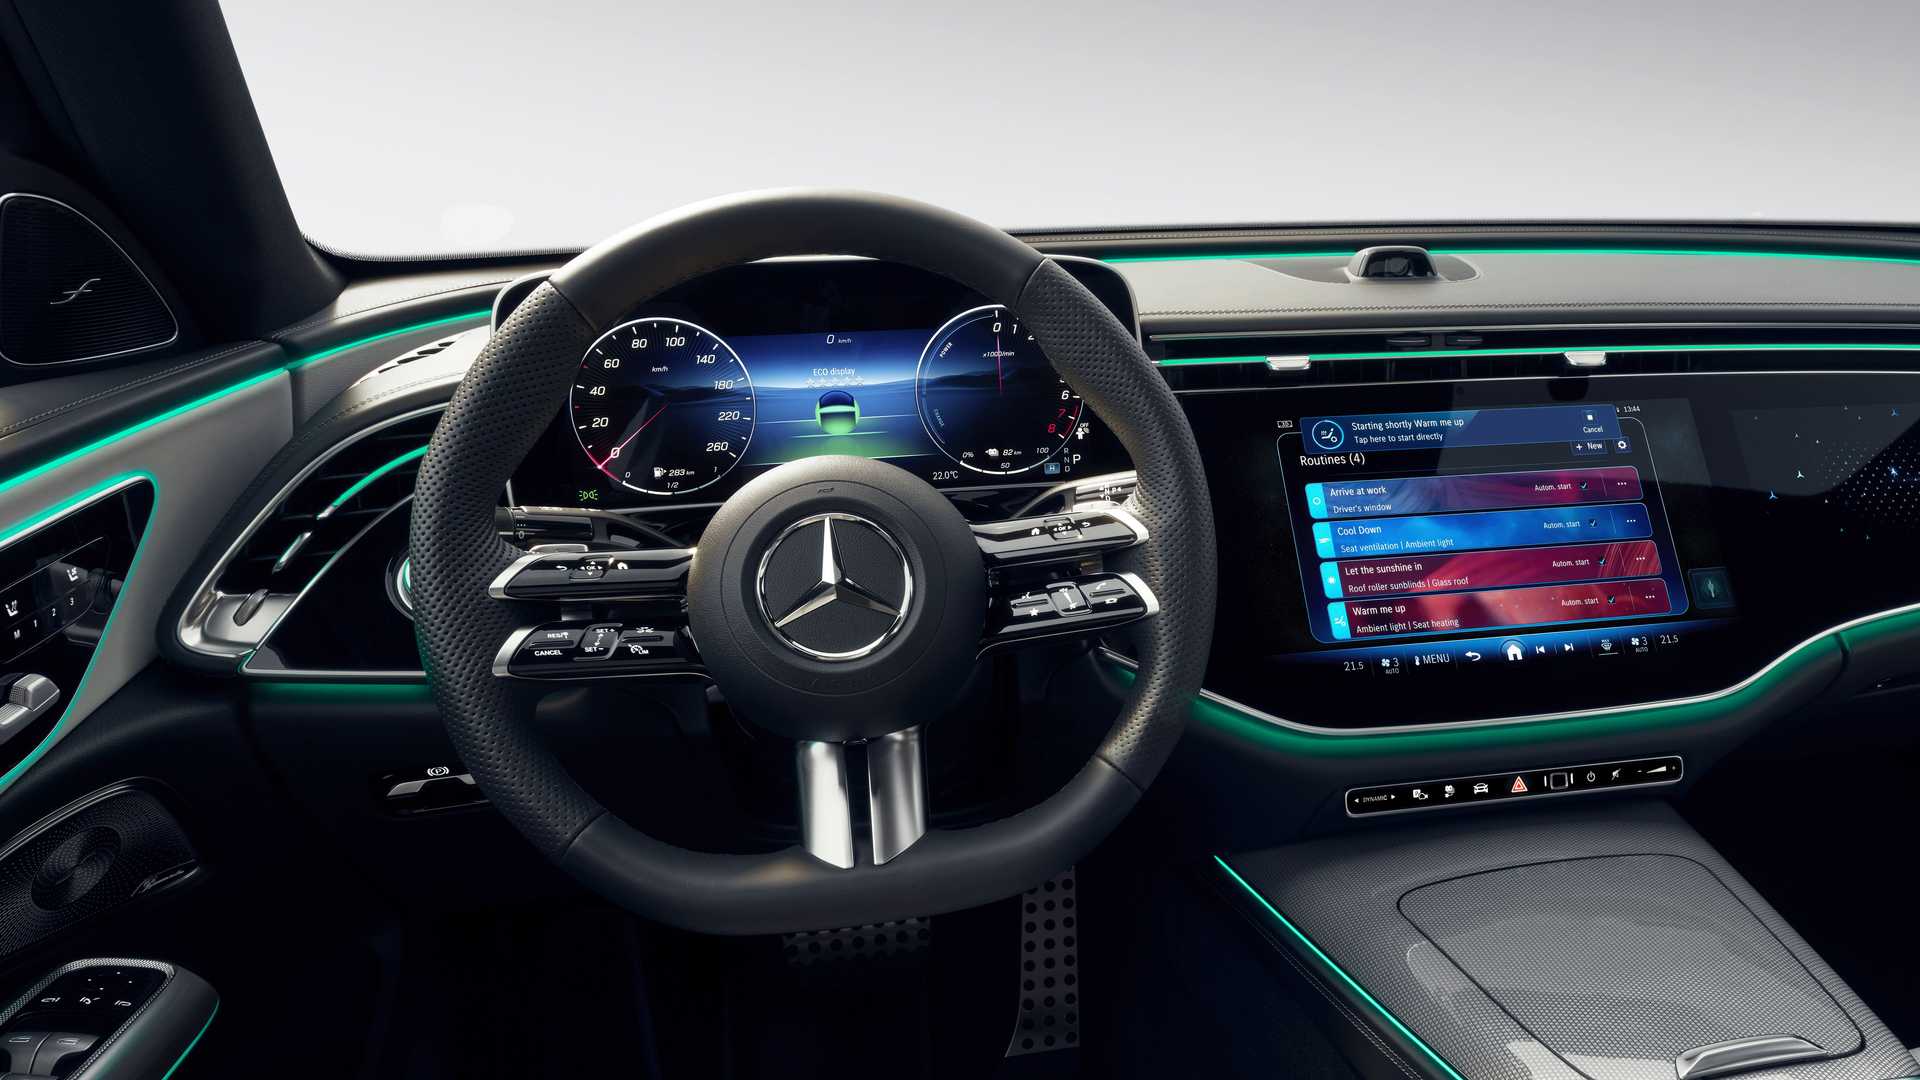 Mercedes-Benz công bố sớm nội thất E-Class mới với màn hình khổng lồ, TikTok và camera selfie mặc định - Ảnh 9.